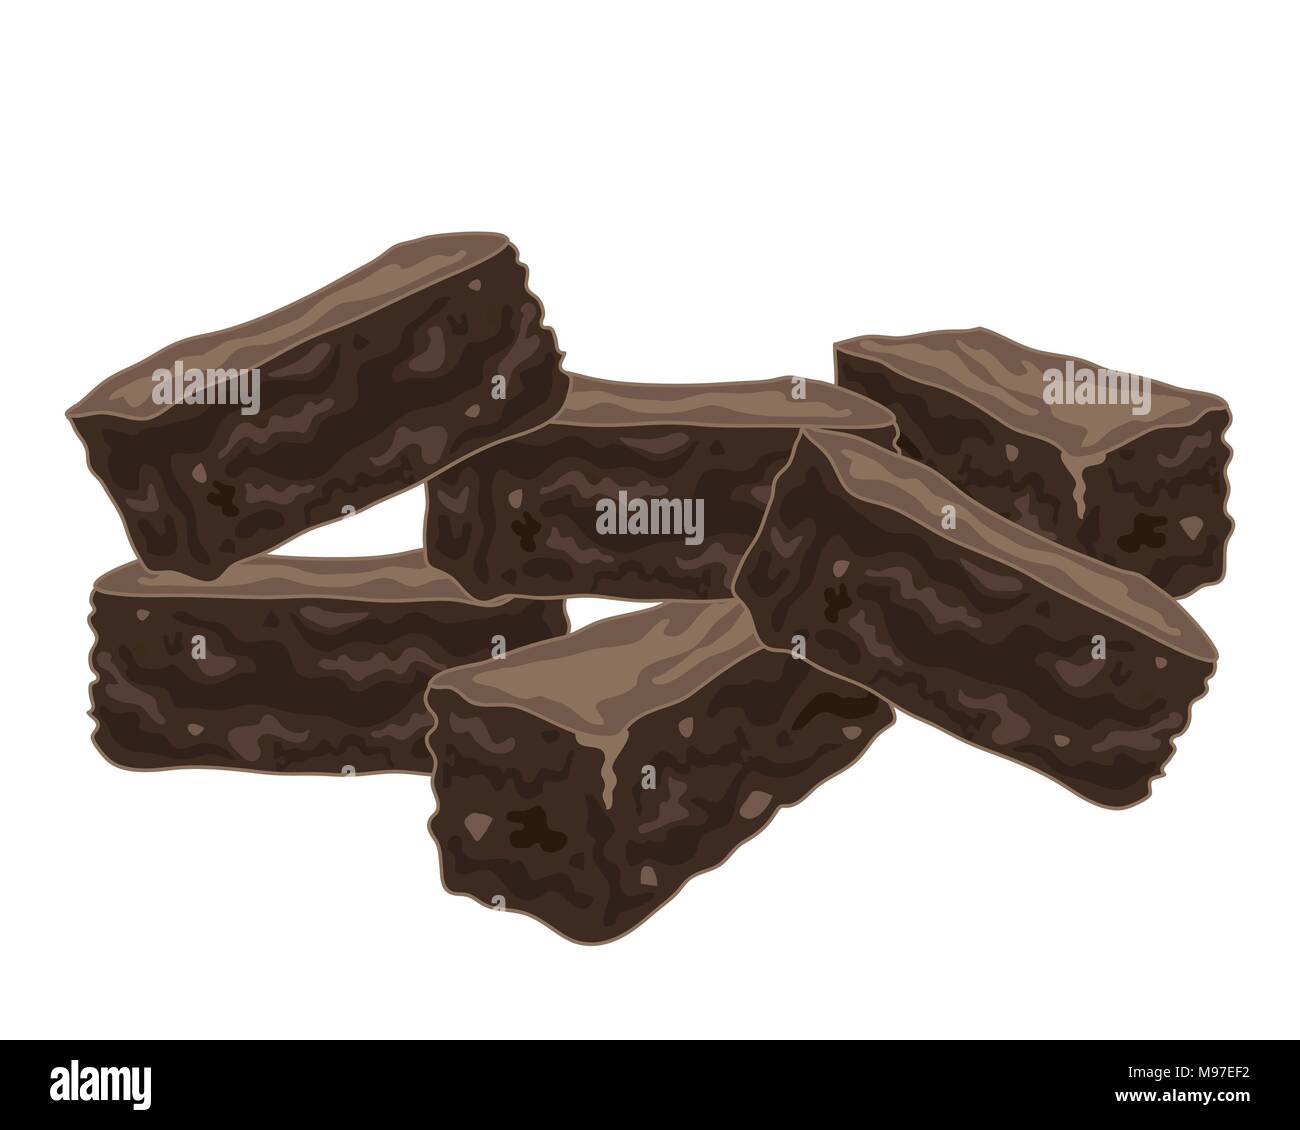 Un vecteur illustration au format eps d'une pile de délicieux brownies au chocolat fait maison isolé sur fond blanc Illustration de Vecteur